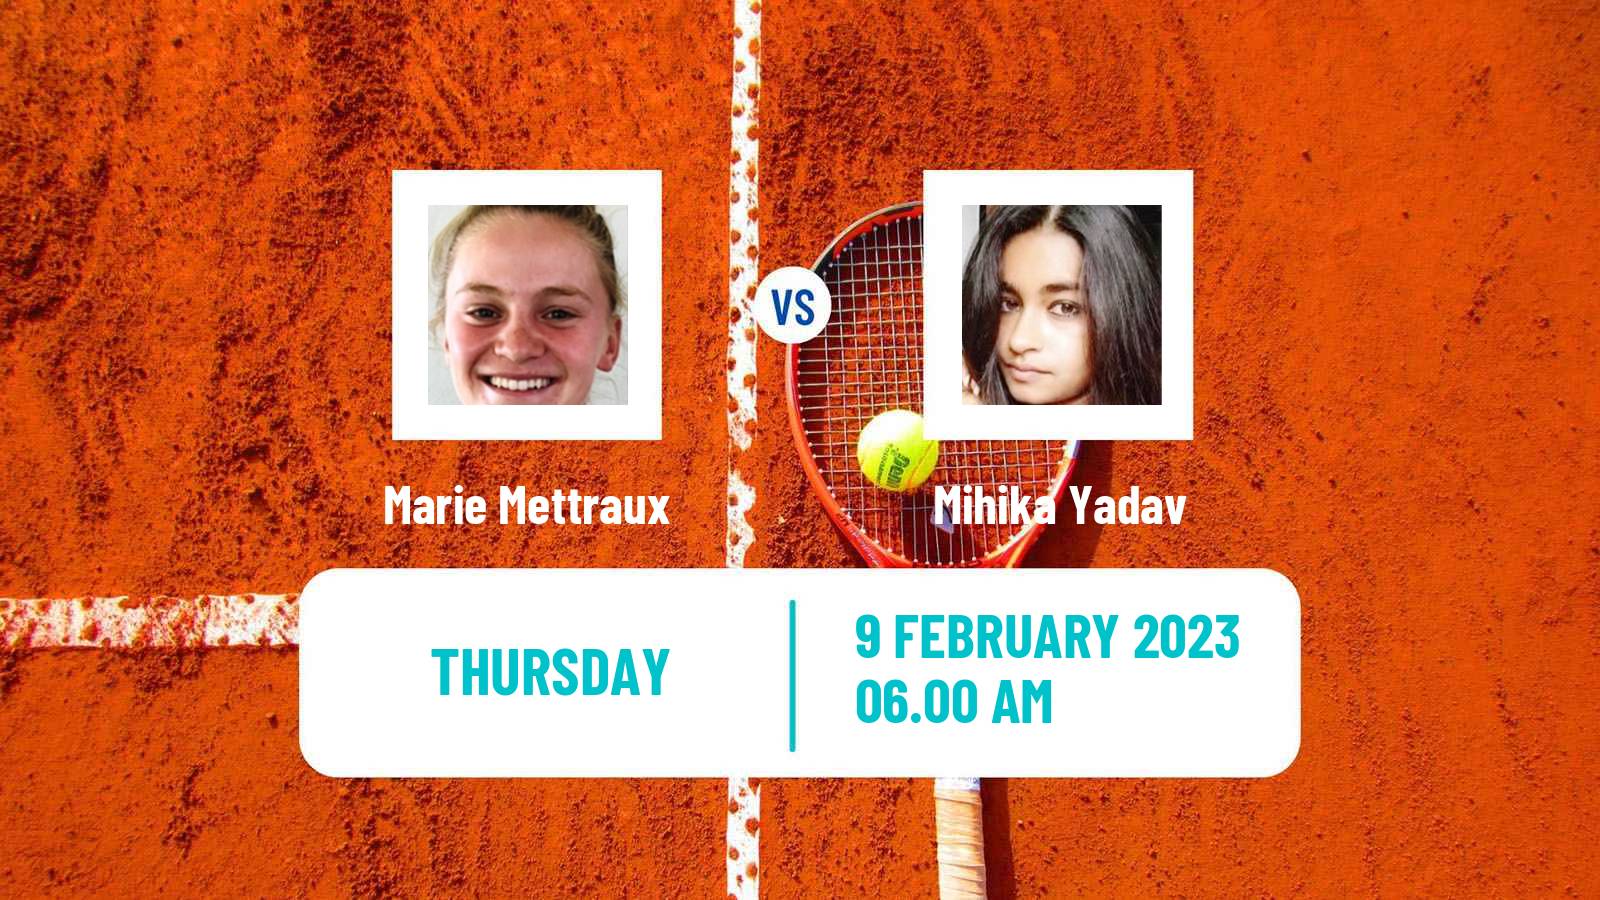 Tennis ITF Tournaments Marie Mettraux - Mihika Yadav